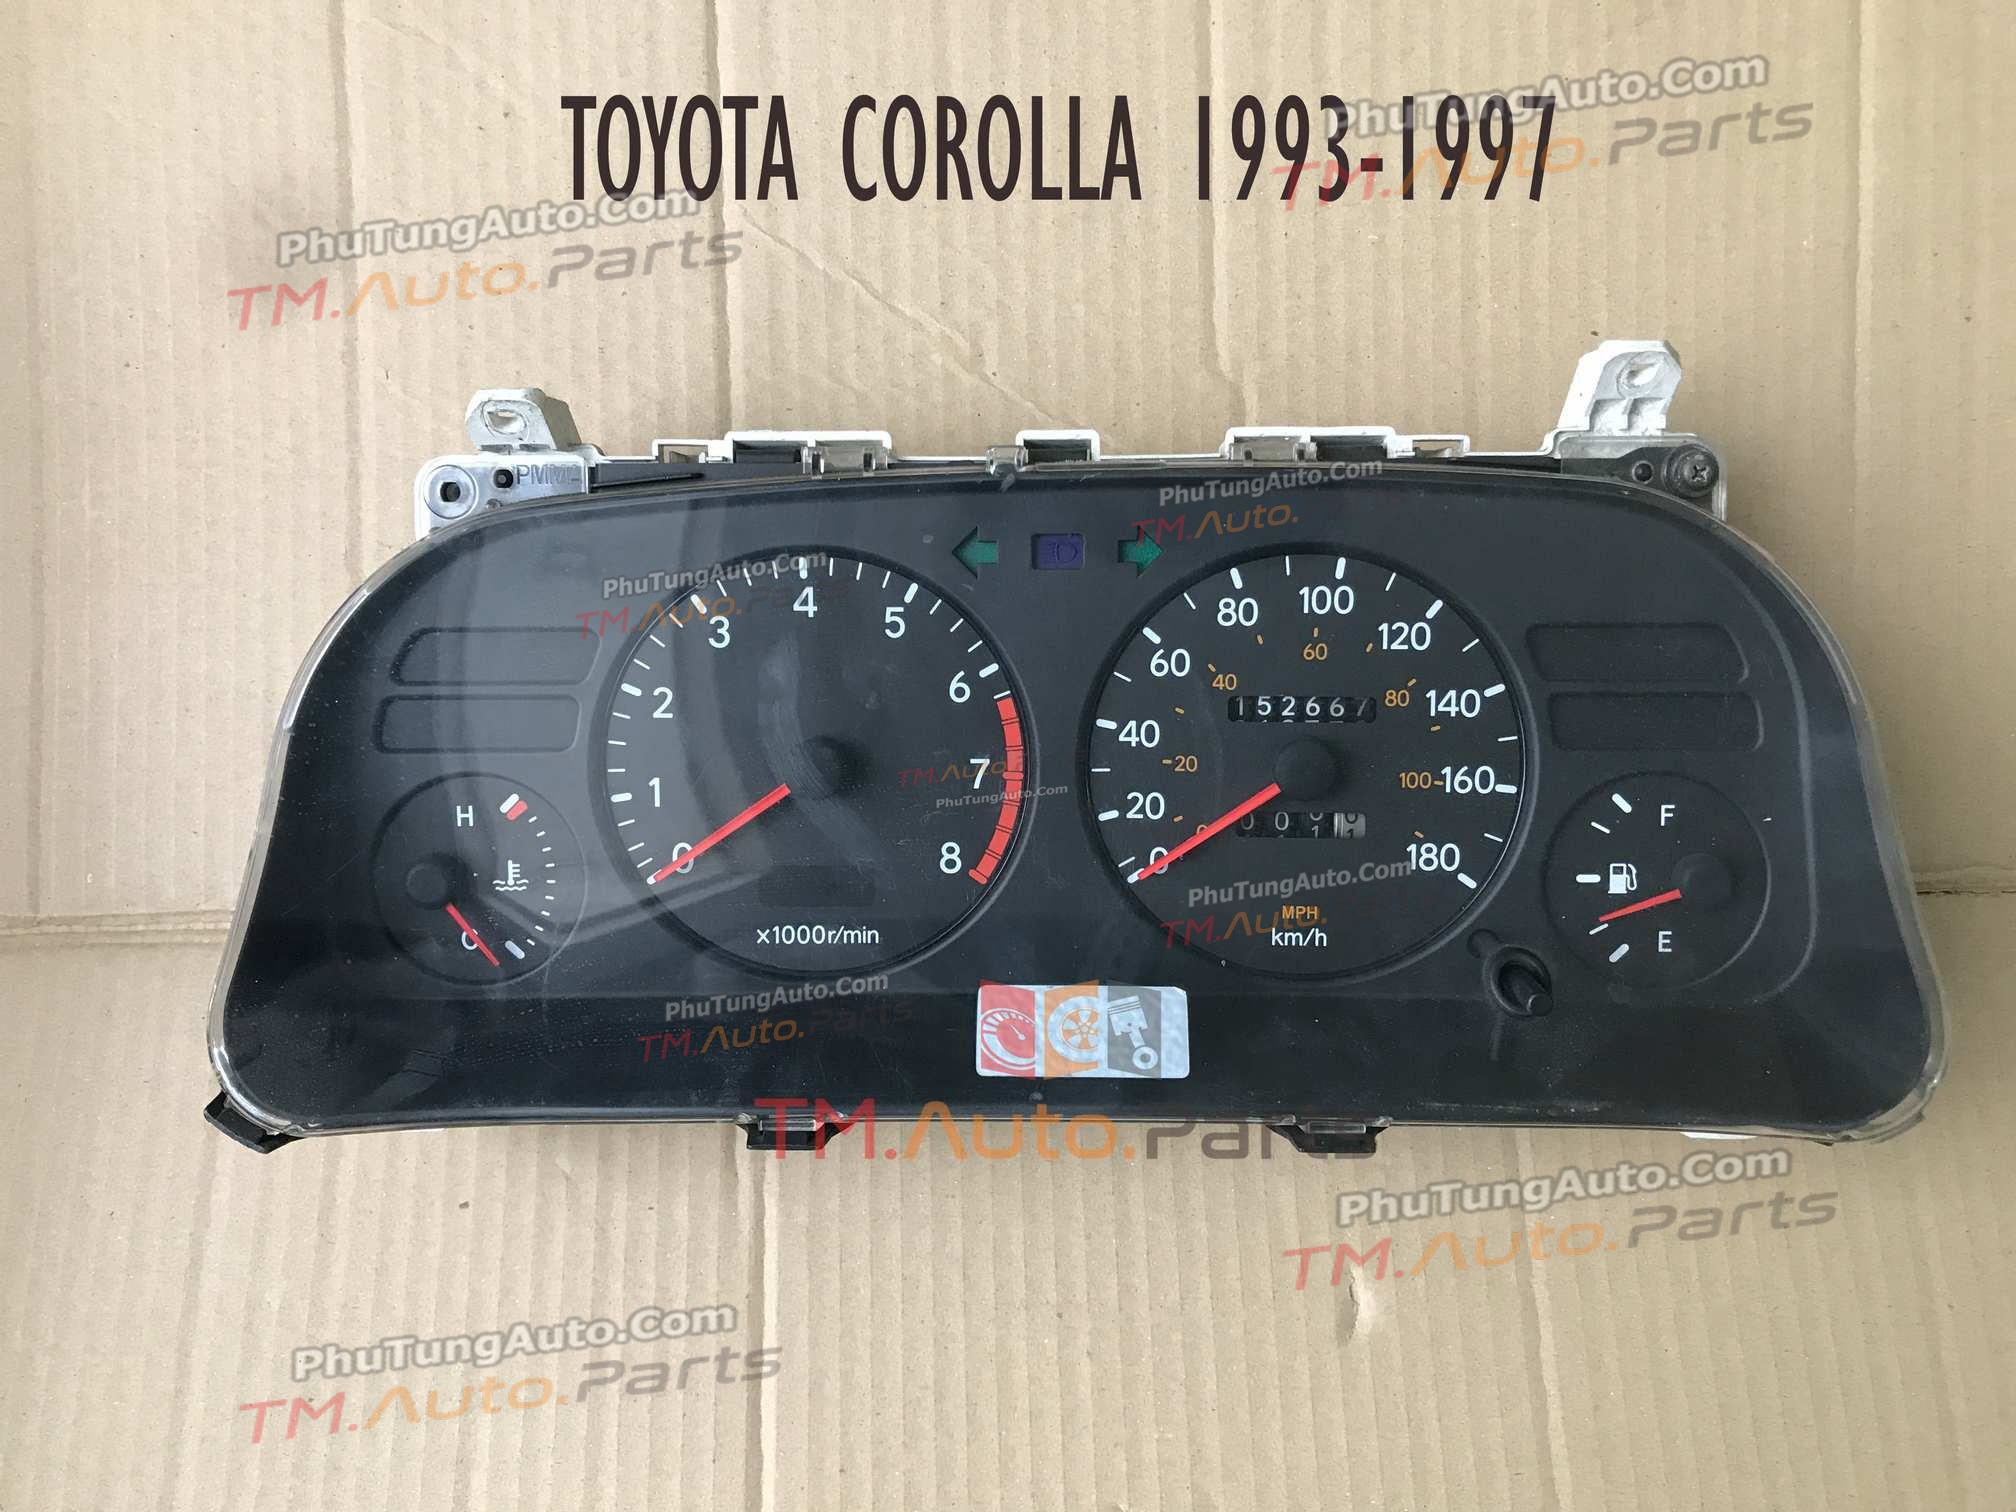 Đồng hồ táp lô Toyota Corolla 93-97 theo xe (hết)